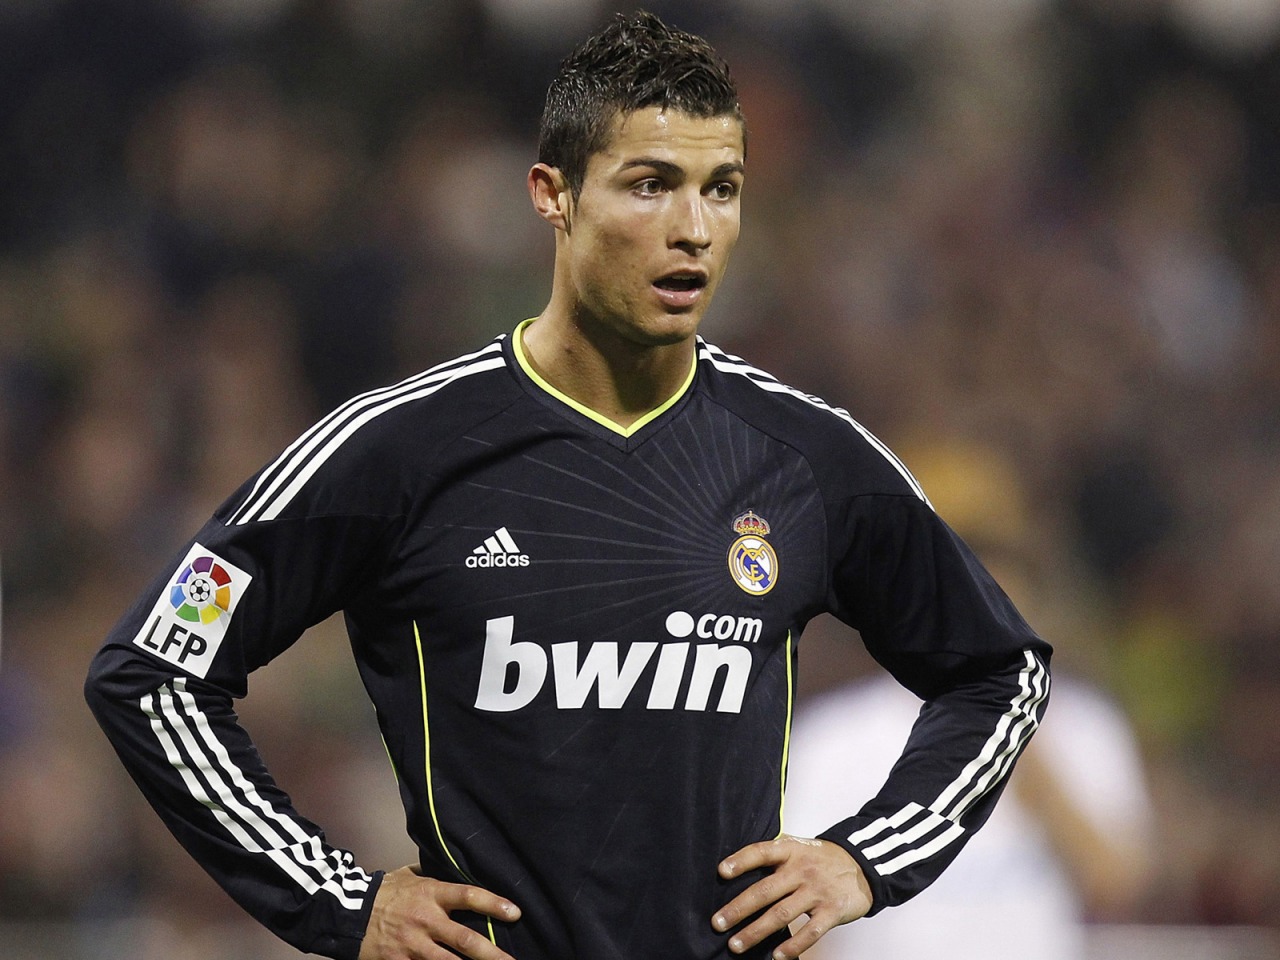 http://4.bp.blogspot.com/-cK4UFgx0iKM/TwQVr8fVyBI/AAAAAAAAIYg/lSVKdsRl_fE/s1600/Cristiano+Ronaldo++6.jpg